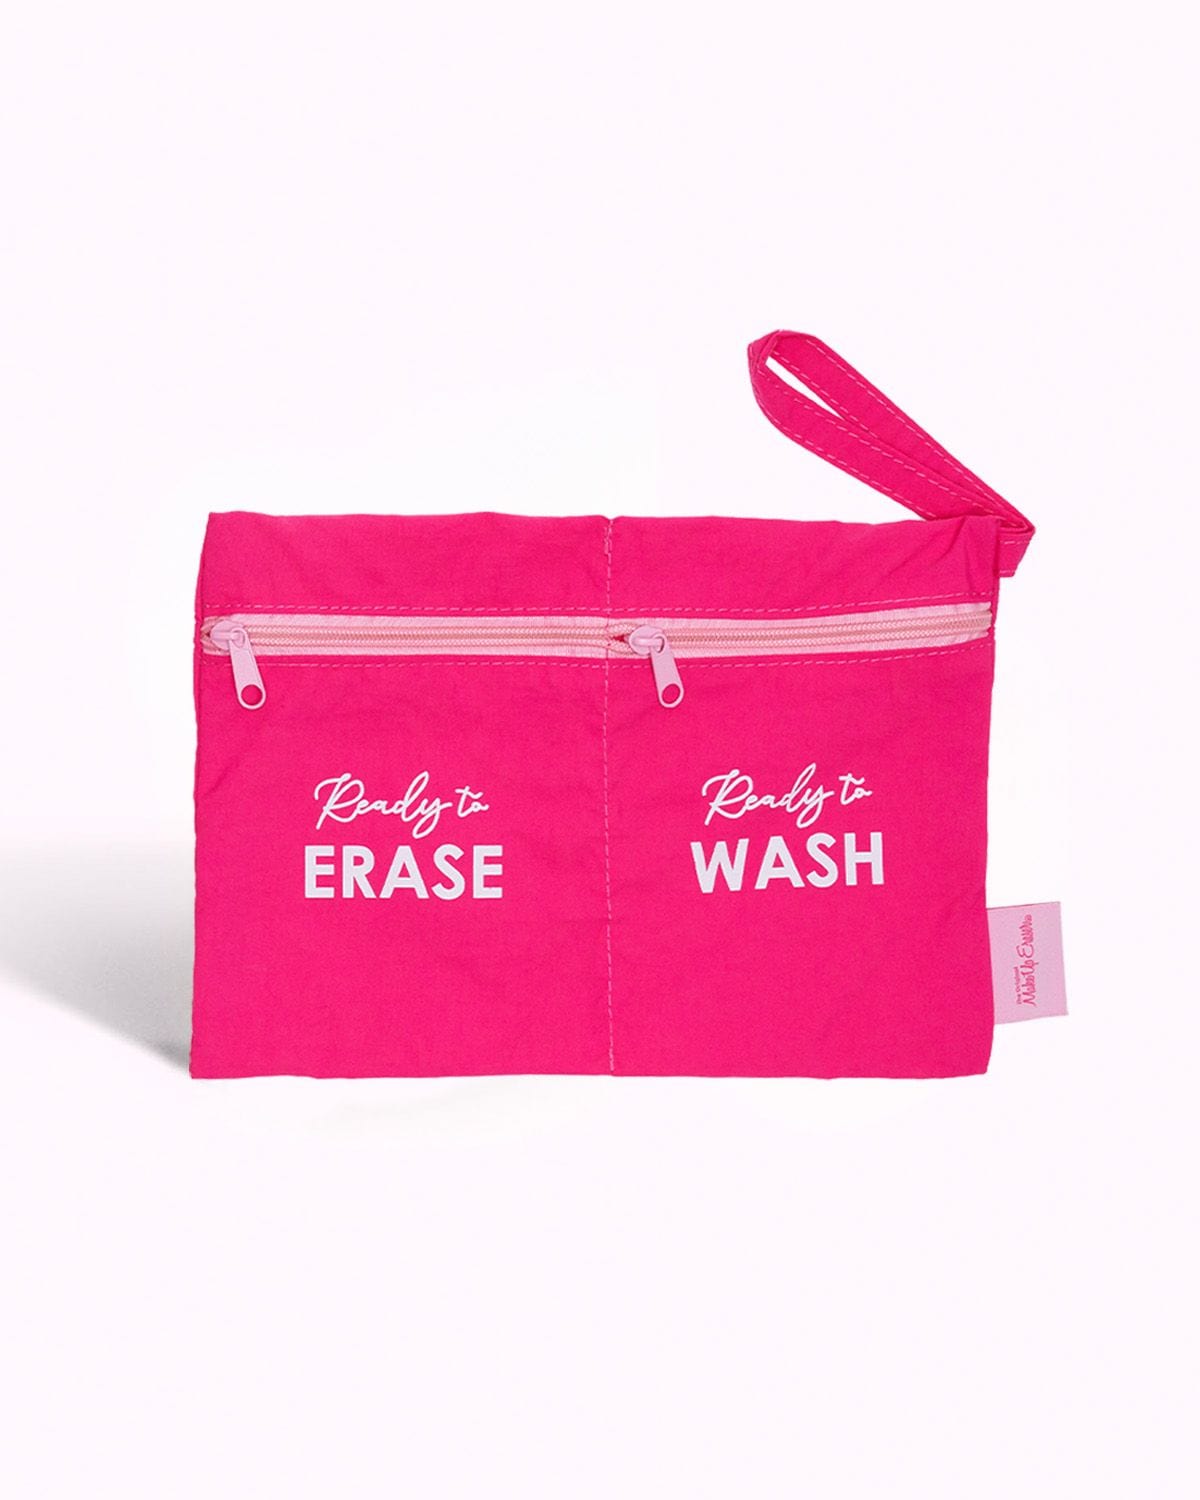 Makeup Eraser Wet/Dry Travel Bag